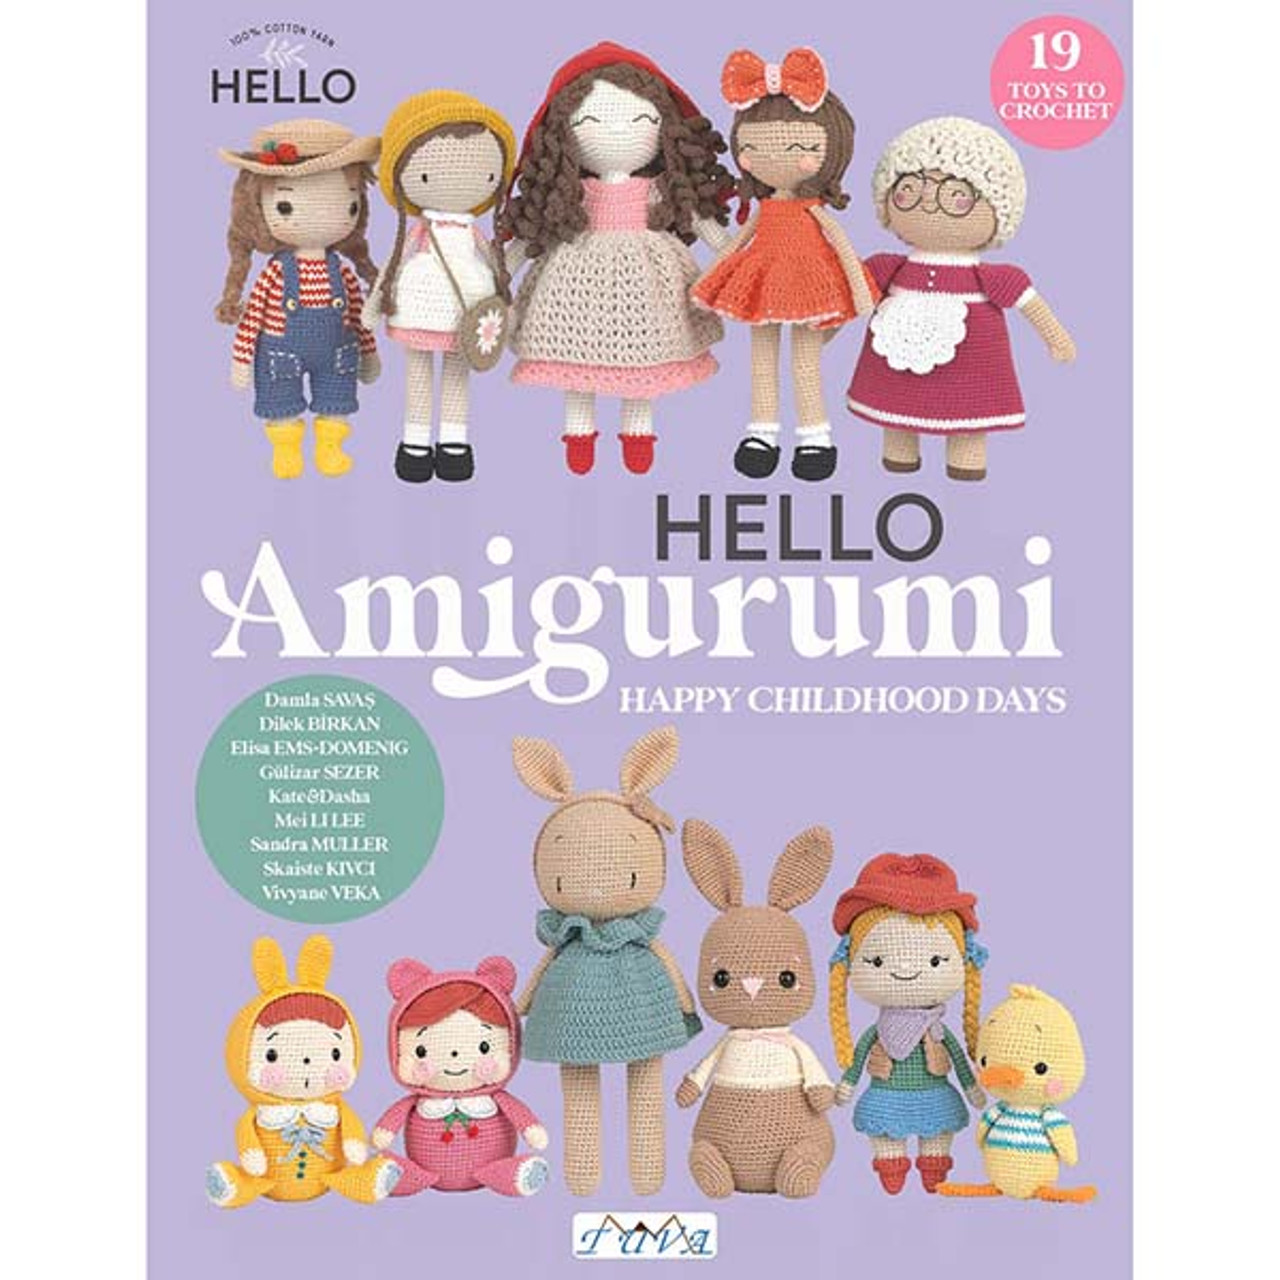 Libro Muñecas de Amigurumi — Verkami